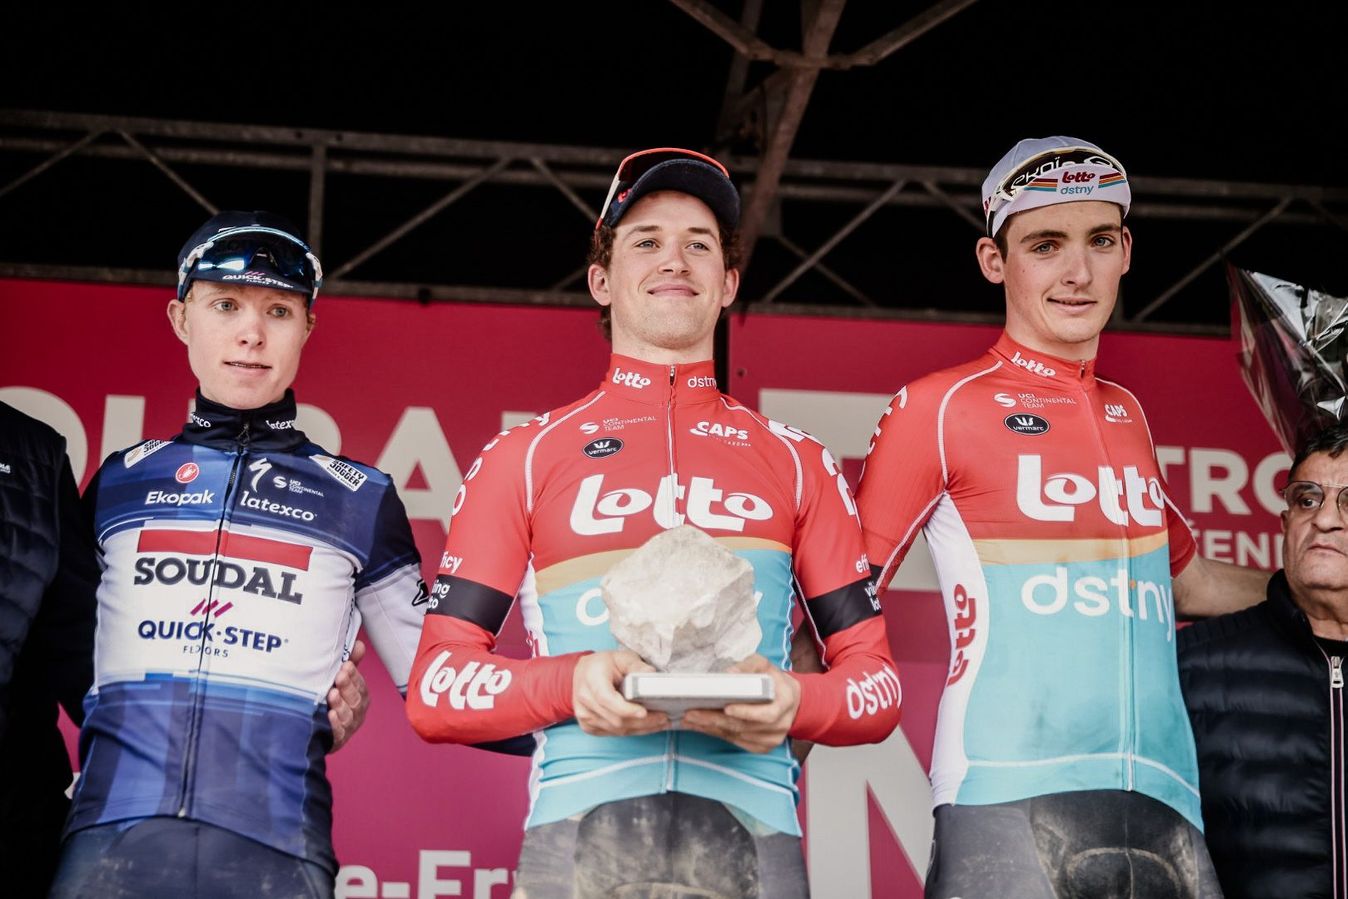 Tijl De Decker won Paris-Roubaix Espoirs earlier this season